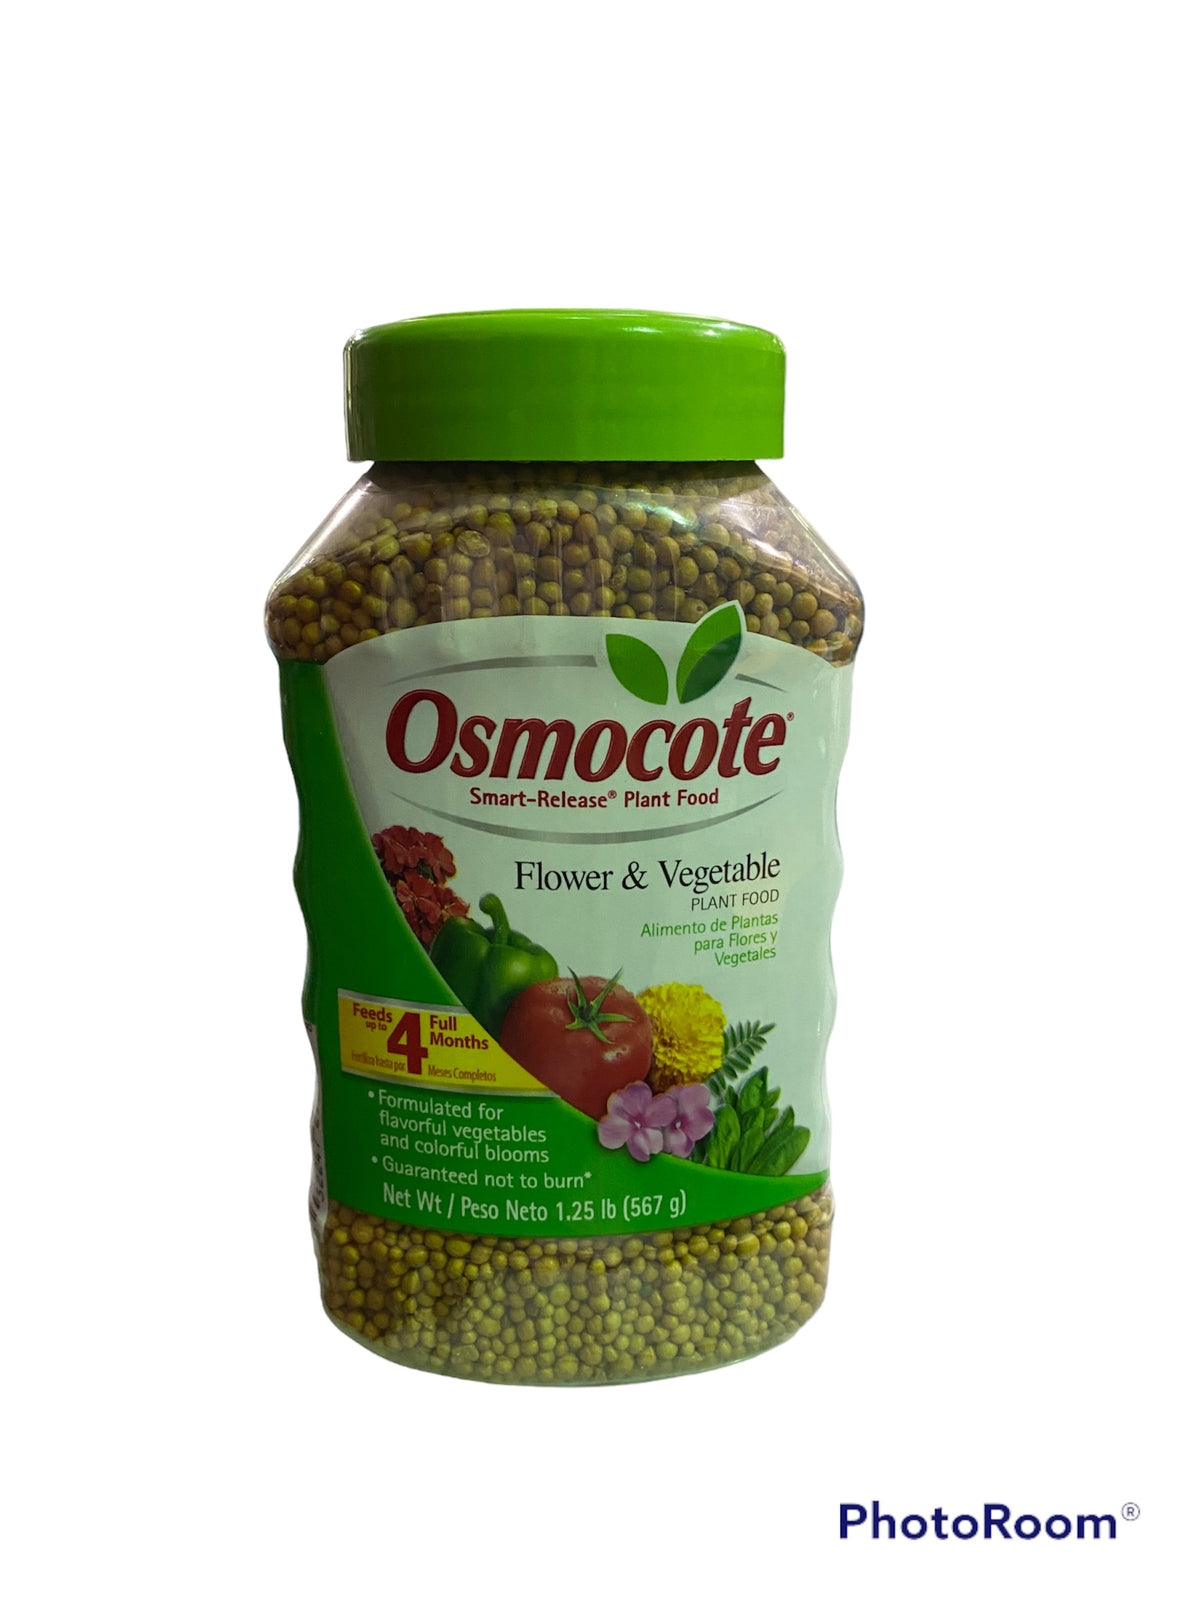 Osmocote 14-14-14 Smart-Release Plant Food for Flower & Vegetable